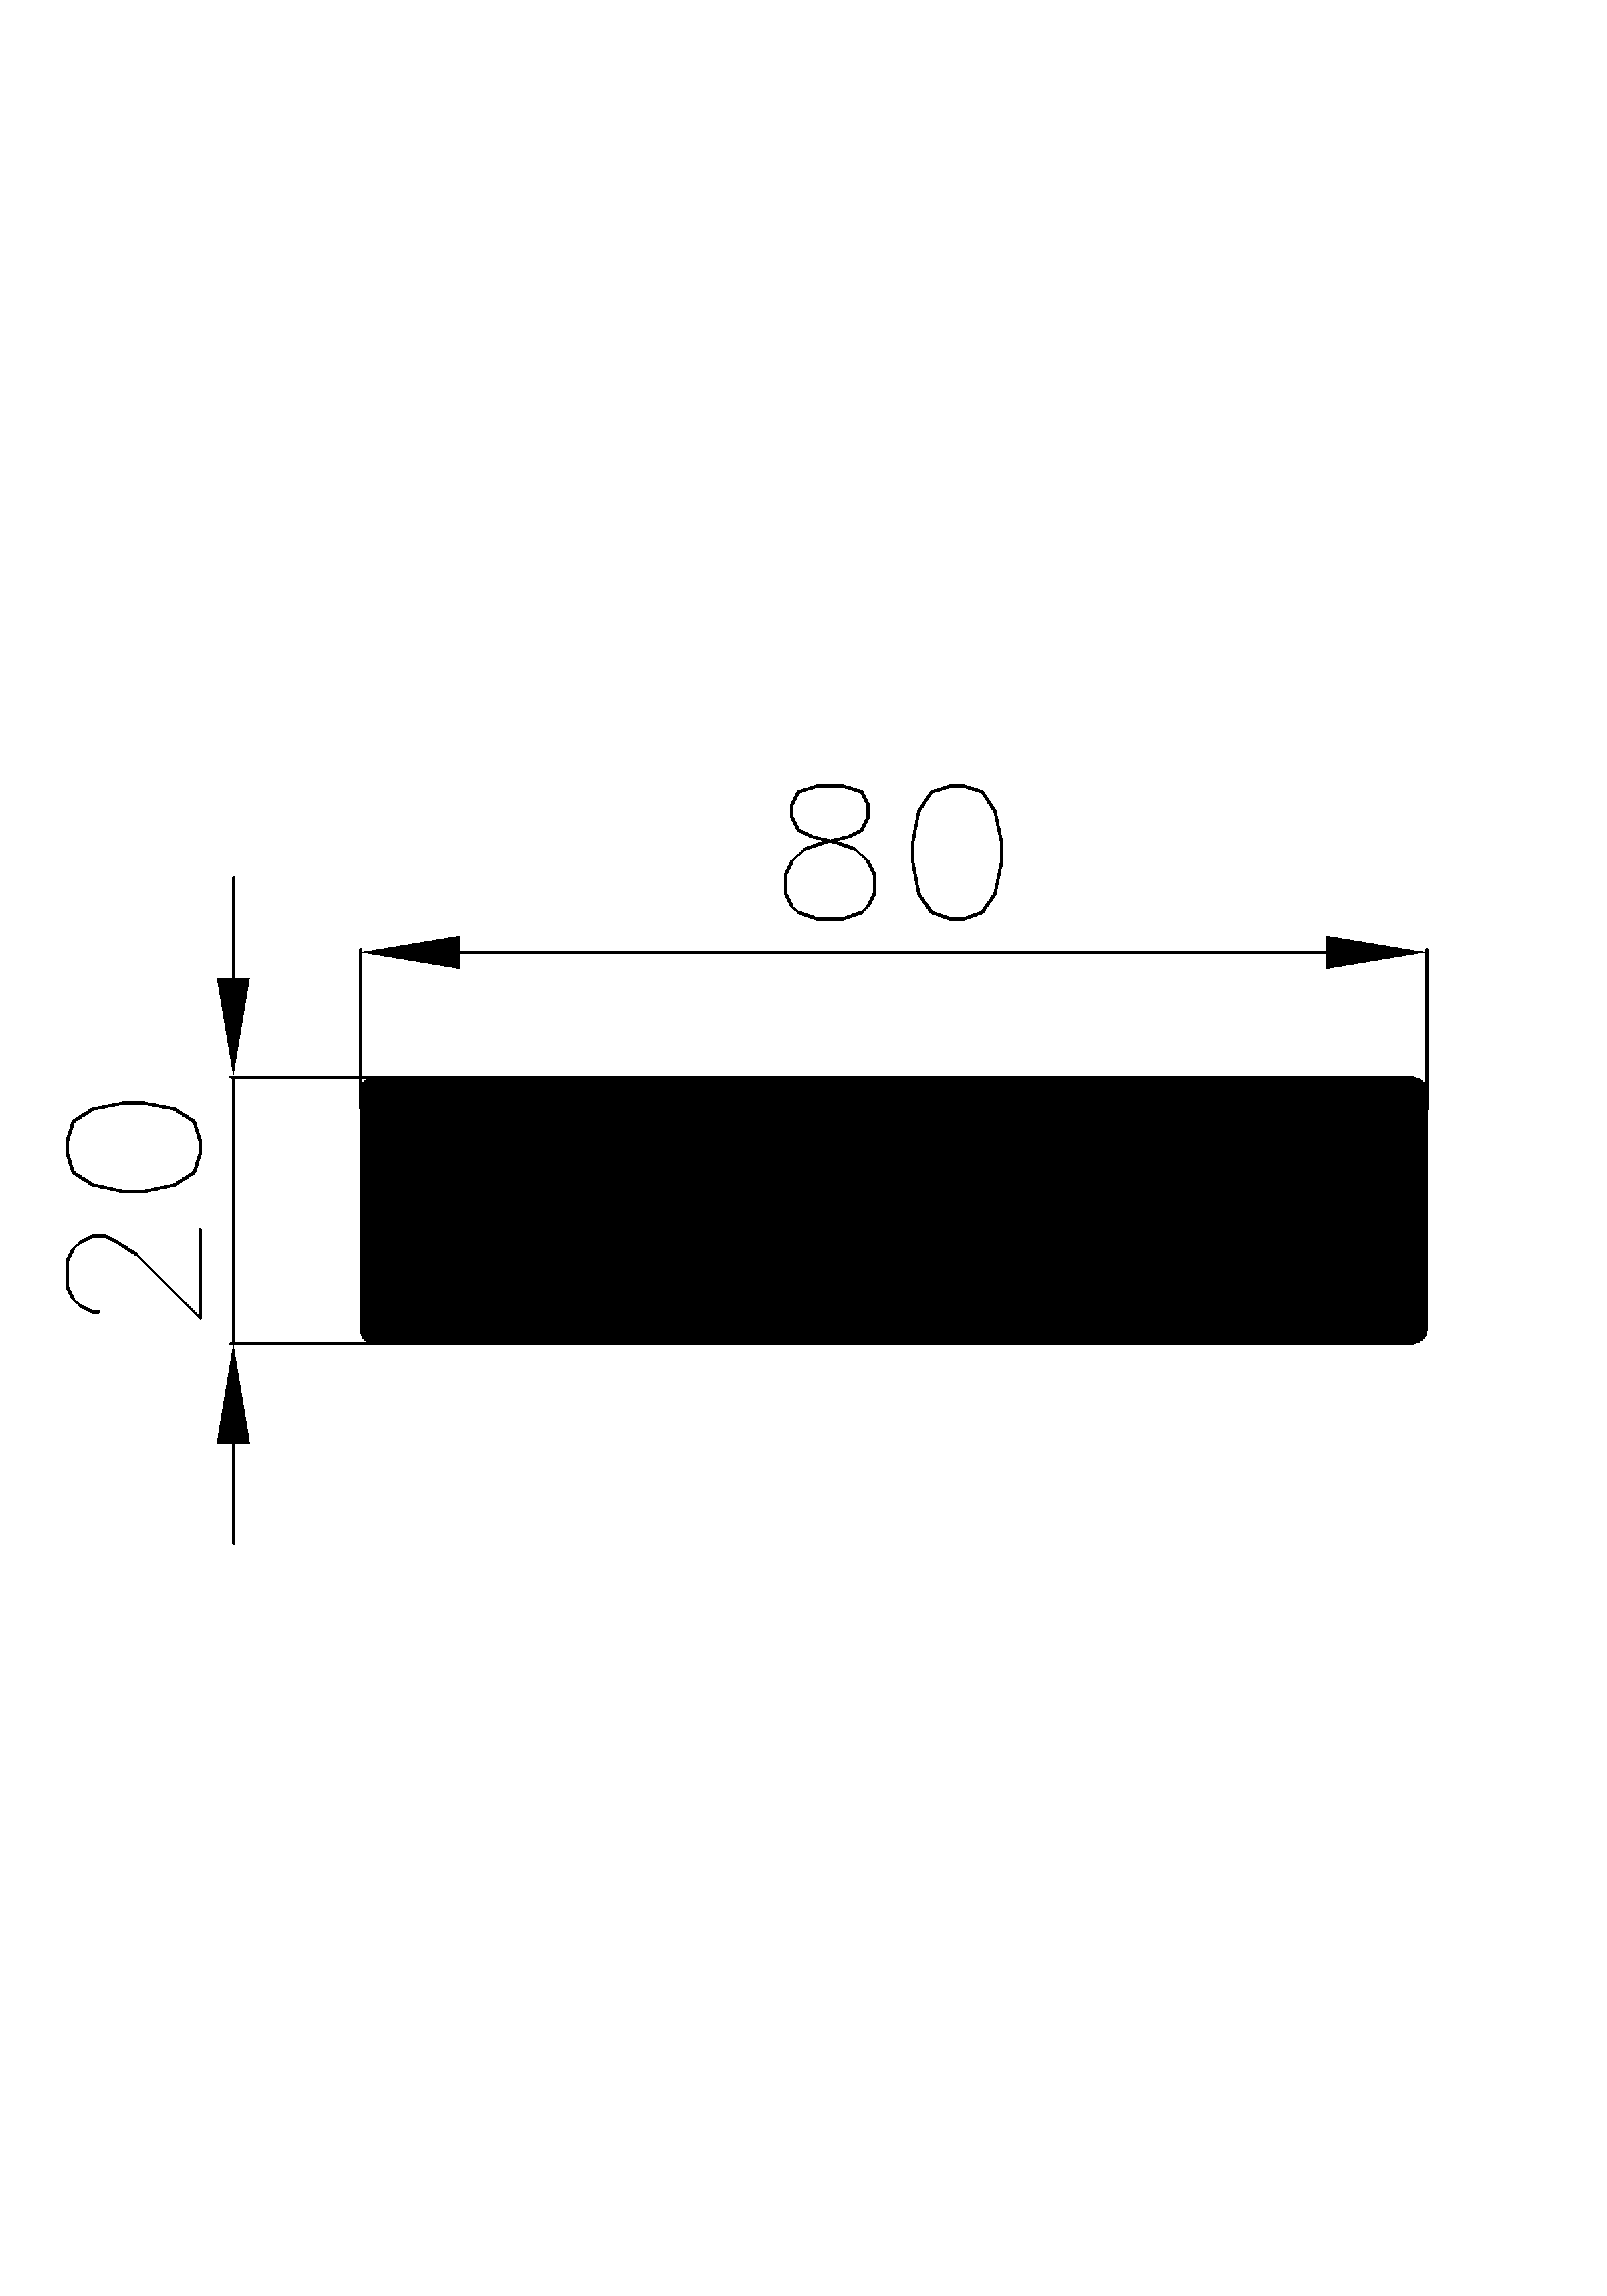 12680365KG - rubber profiles - Square profiles